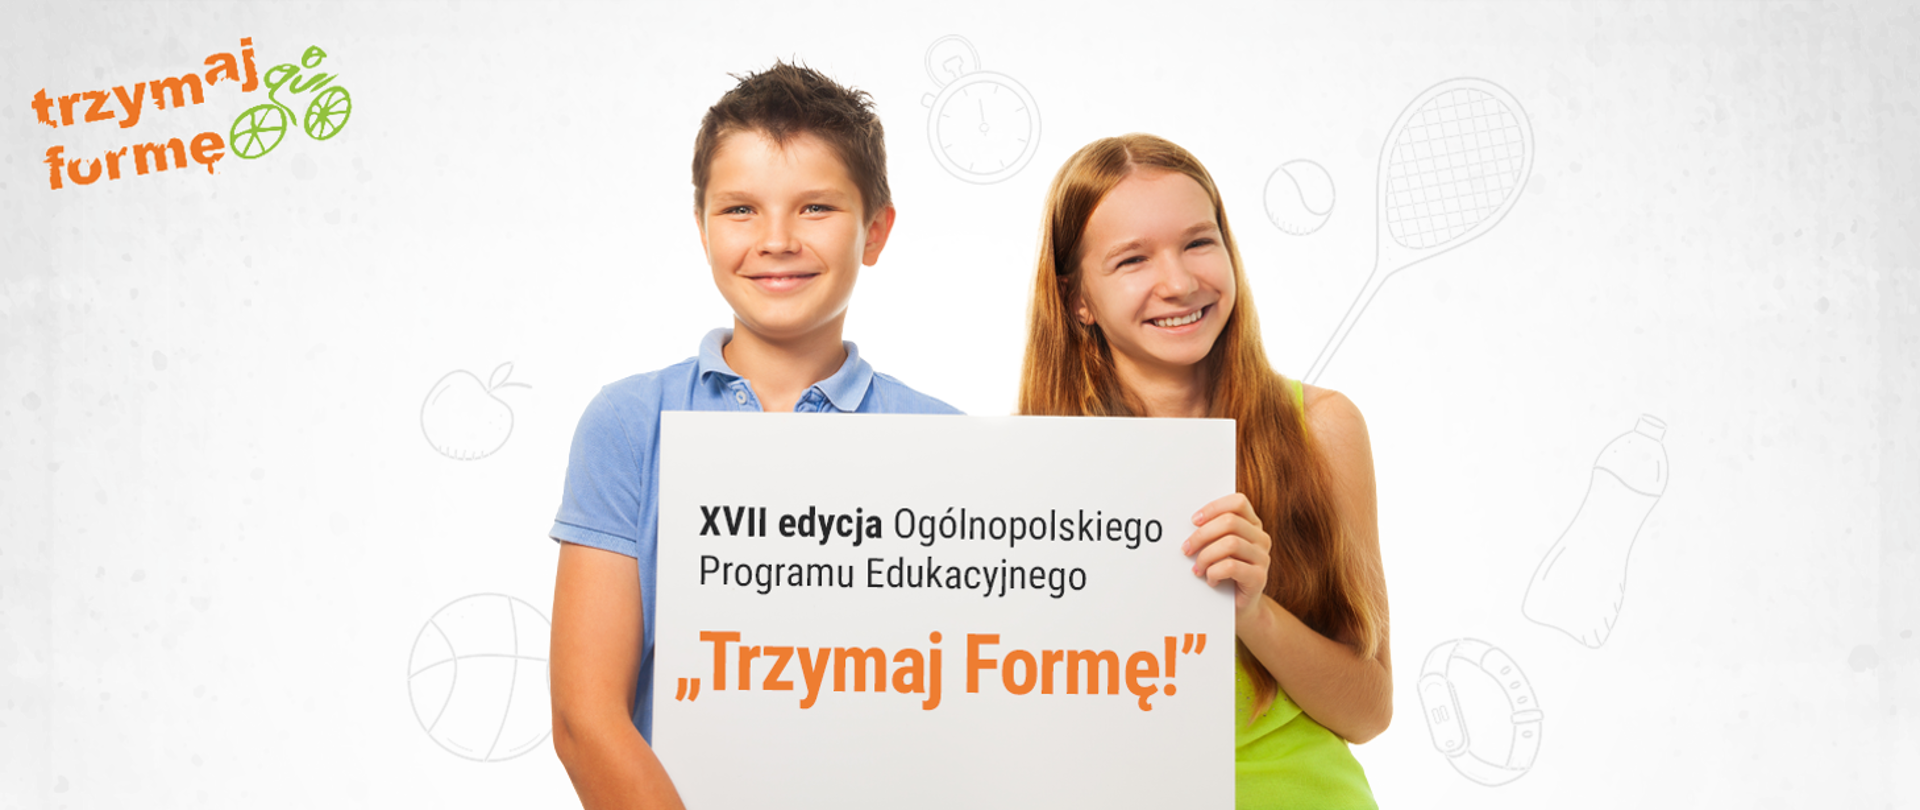 Chłopak i dziewczyna trzymający plakat z napisem " Trzymaj formę"